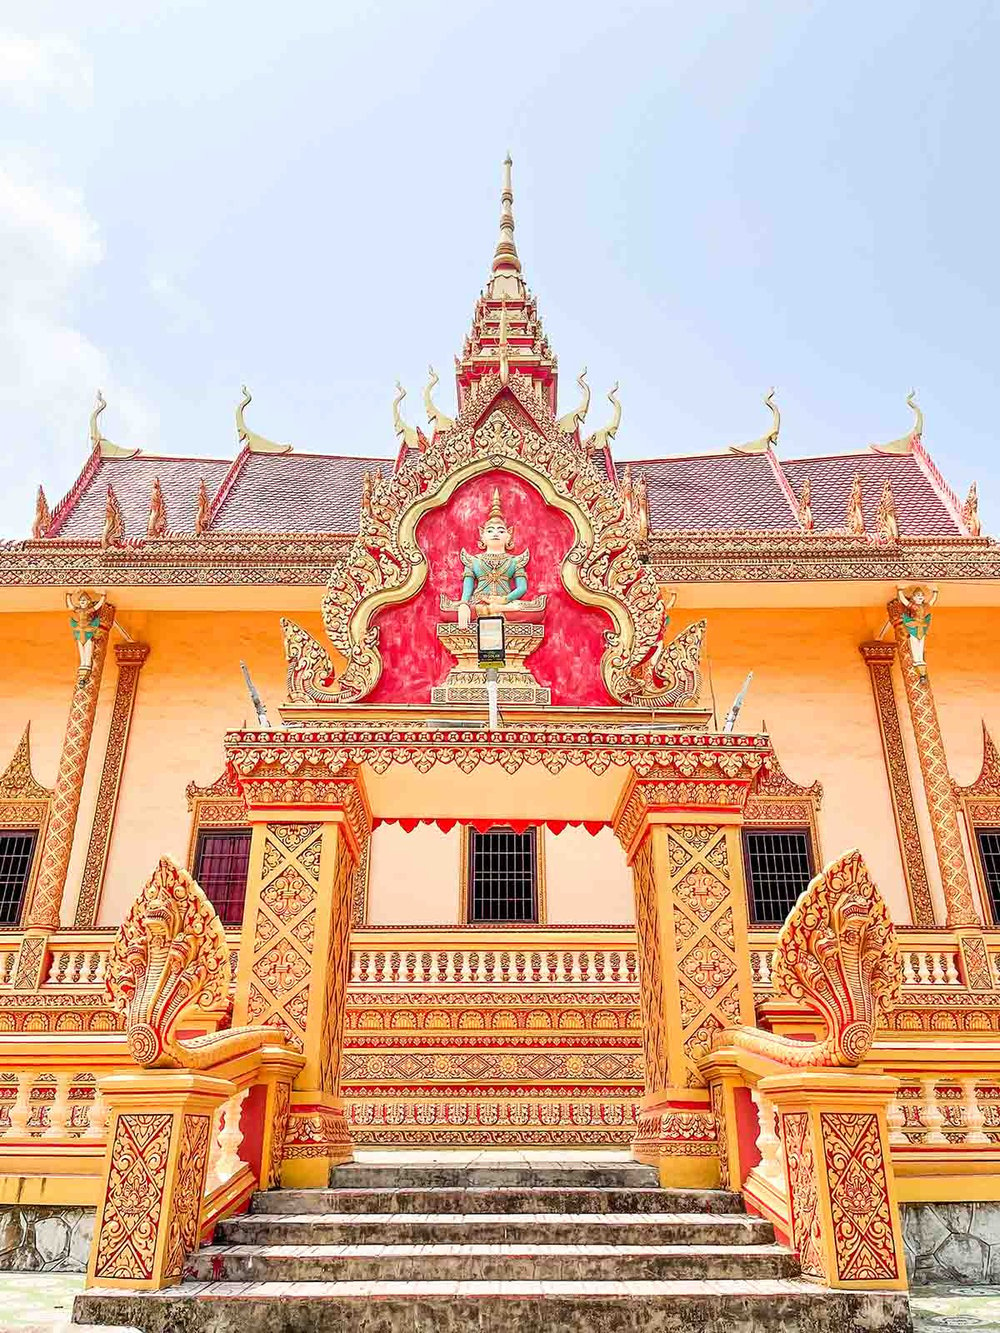 Hiện nay, chùa Xiêm Cán không chỉ là nơi tập trung tín ngưỡng của đồng bào Khmer địa phương, mà hàng ngày có đến hàng trăm lượt khách đến tham quan, chiêm ngưỡng. Ảnh: Henry Dương